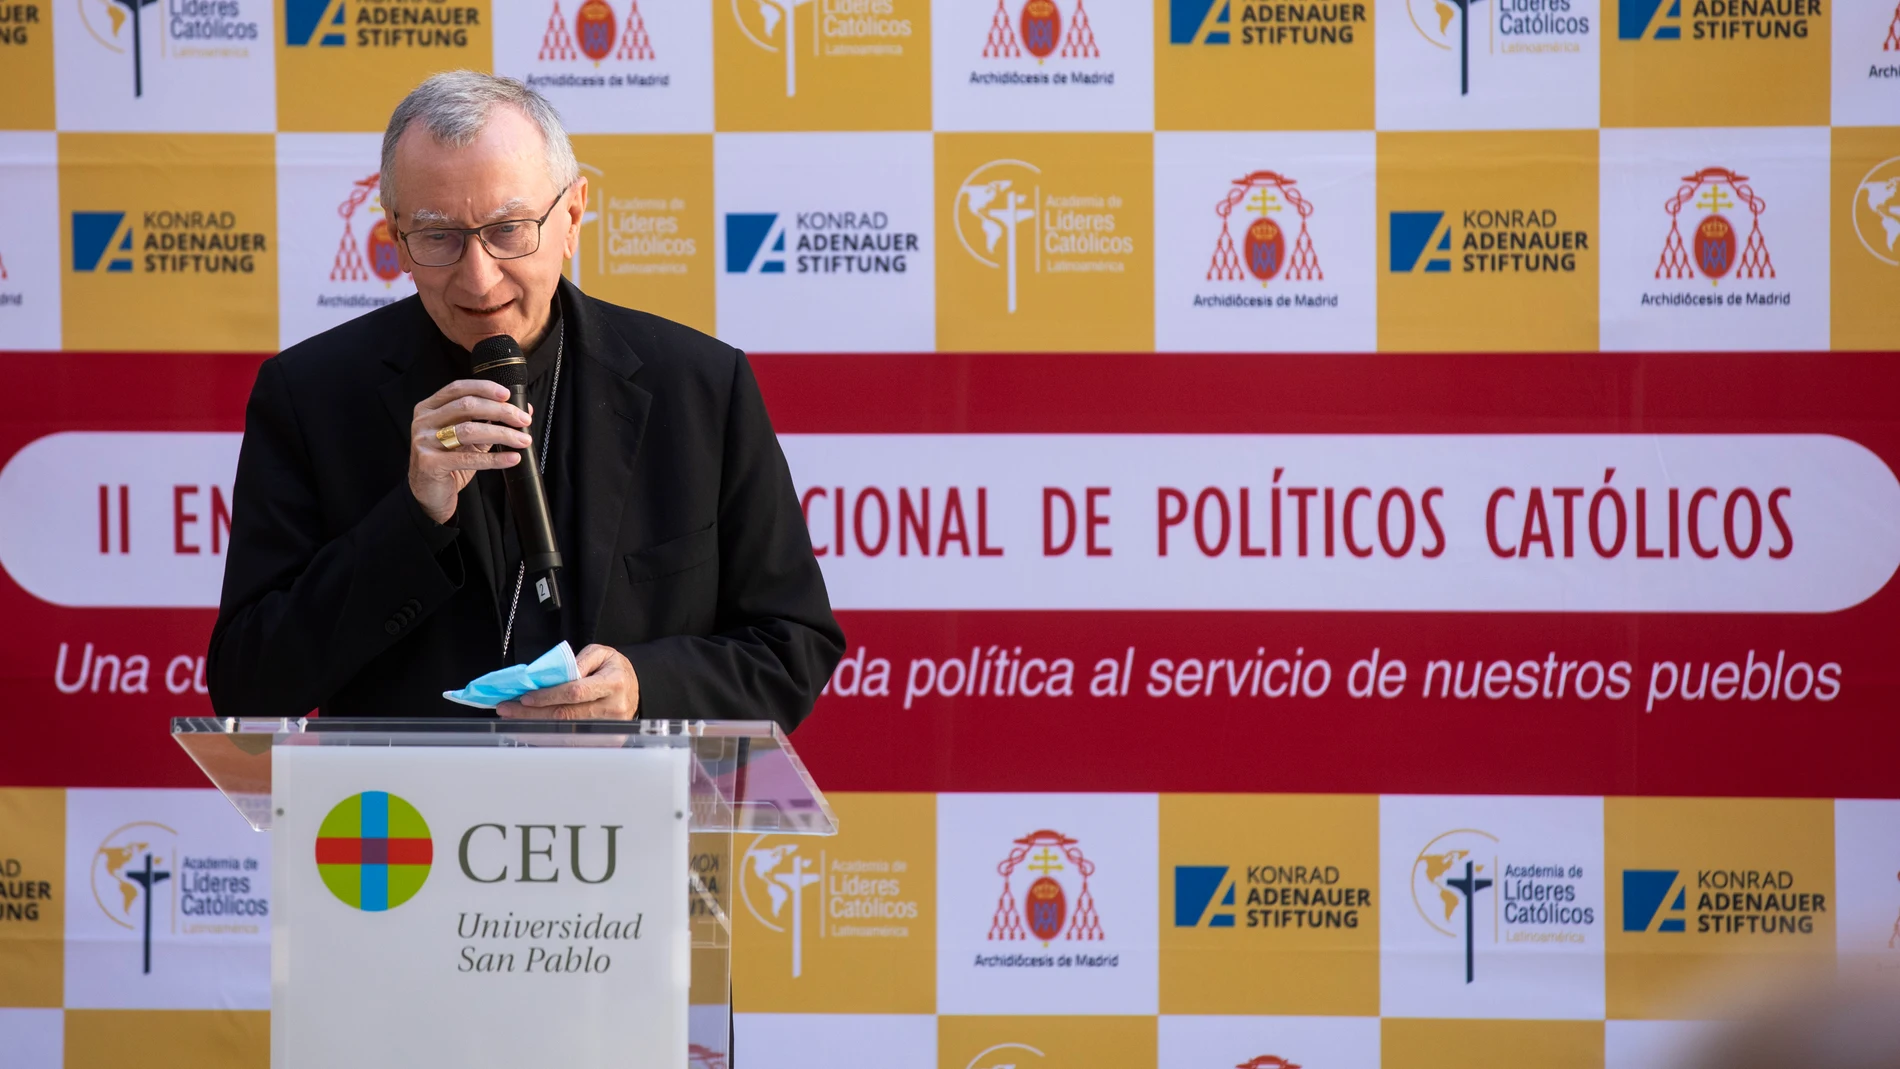 La Universidad Católica San Pablo CEU, celebra las segundas jornadas internacionales de políticos católicos, con la presencia del Cardenal Carlos Osorio y del Cardenal Pietro Parolin, secretario de Estado de la Santa Sede.